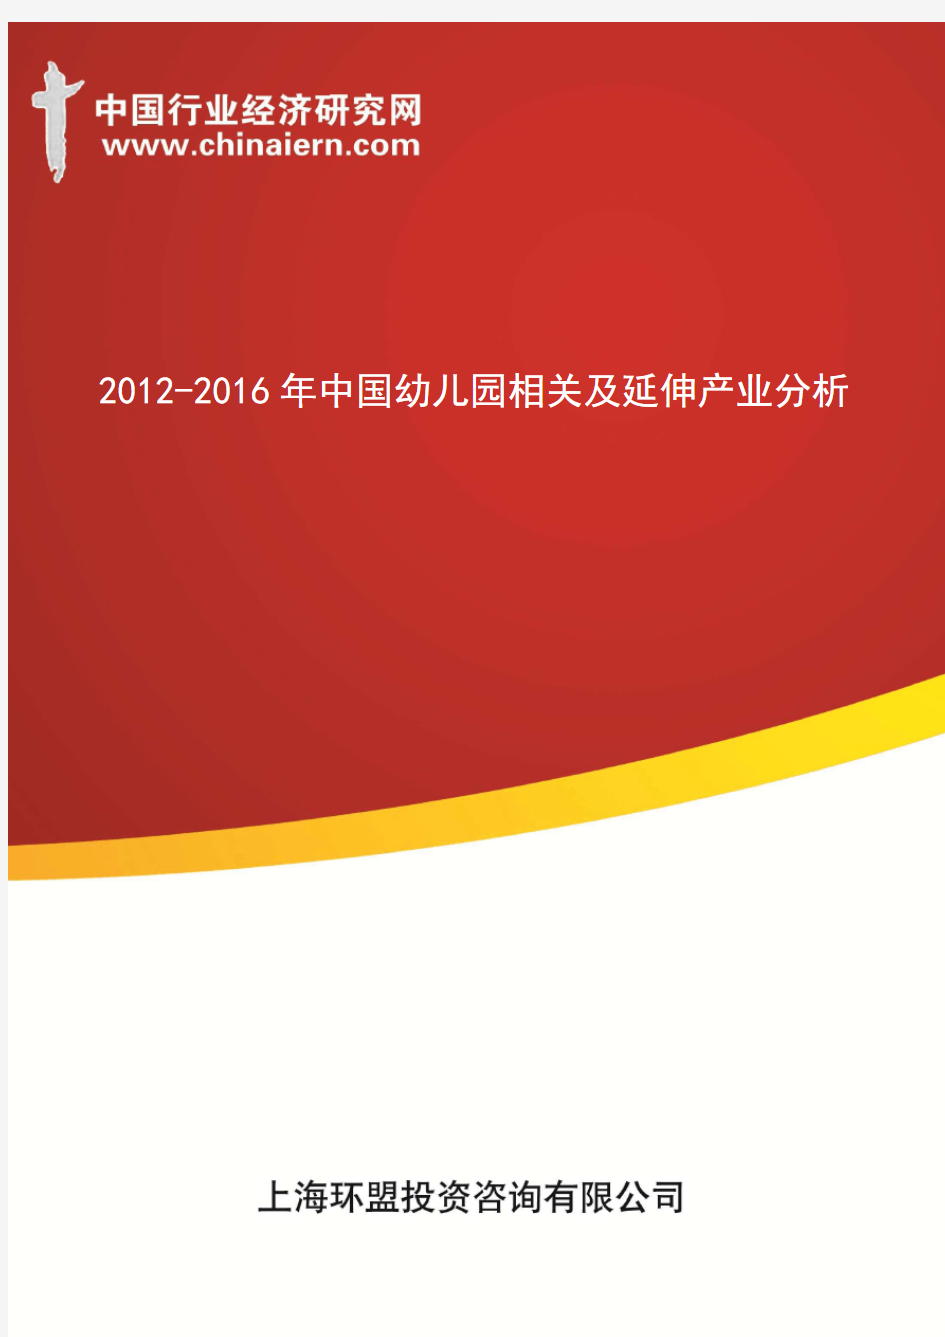 2012-2016年中国幼儿园相关及延伸产业分析(上海环盟)